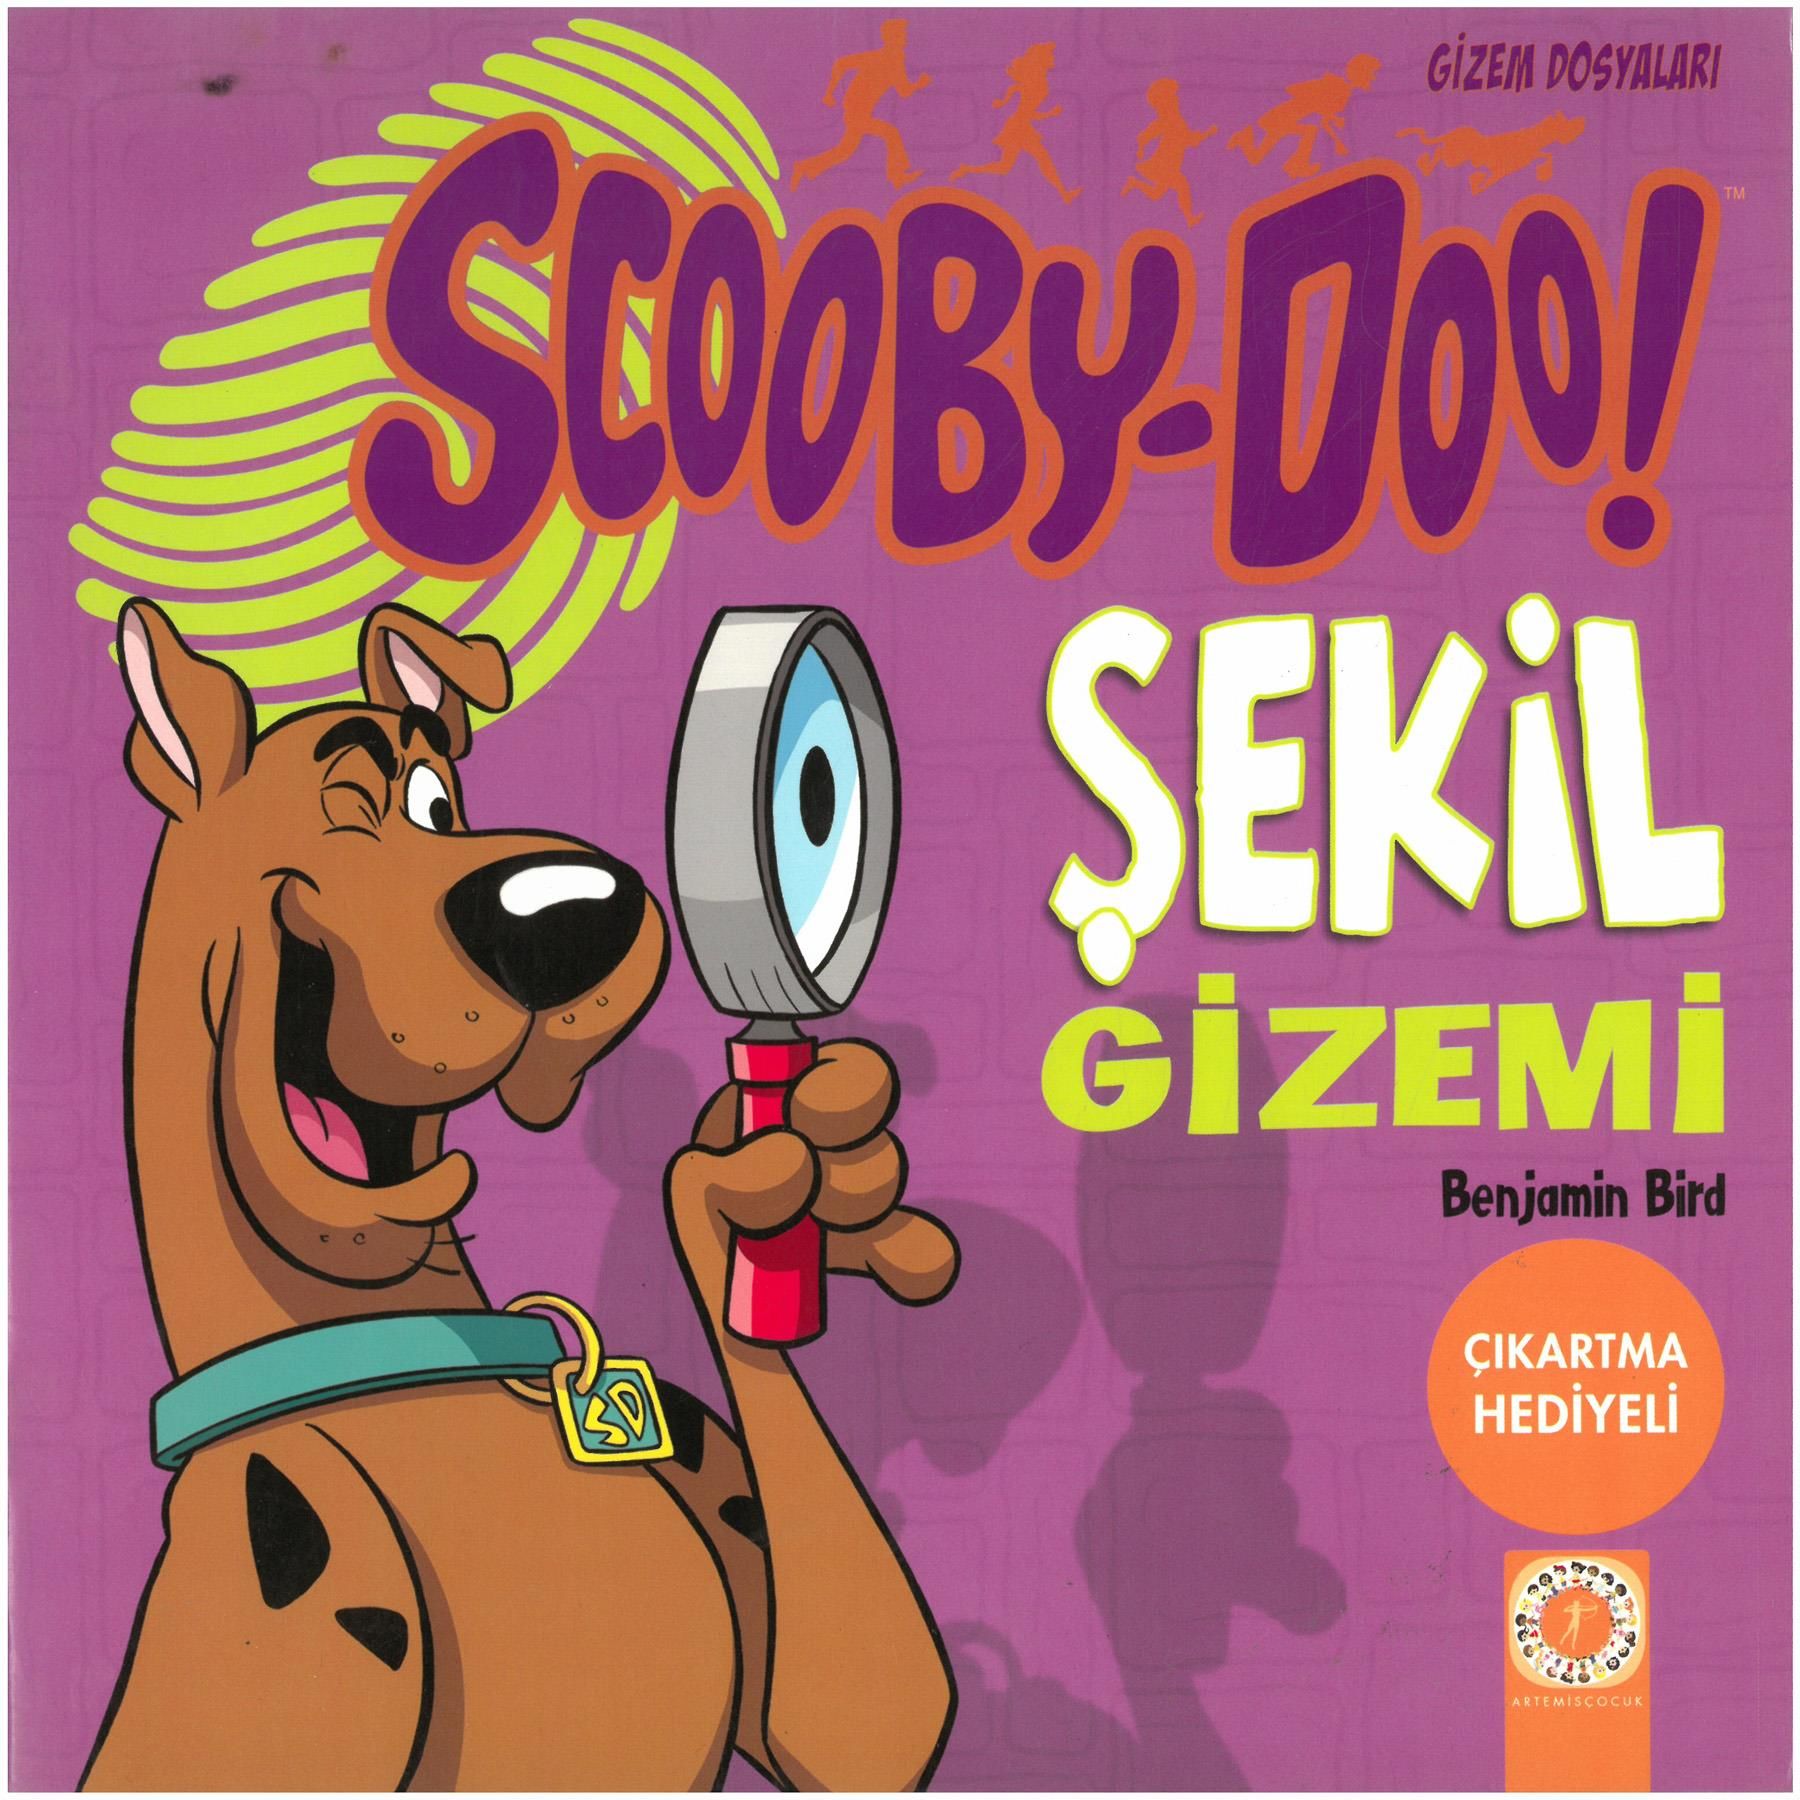 Scooby Doo Gizem Dosyaları Şekil Gizemi